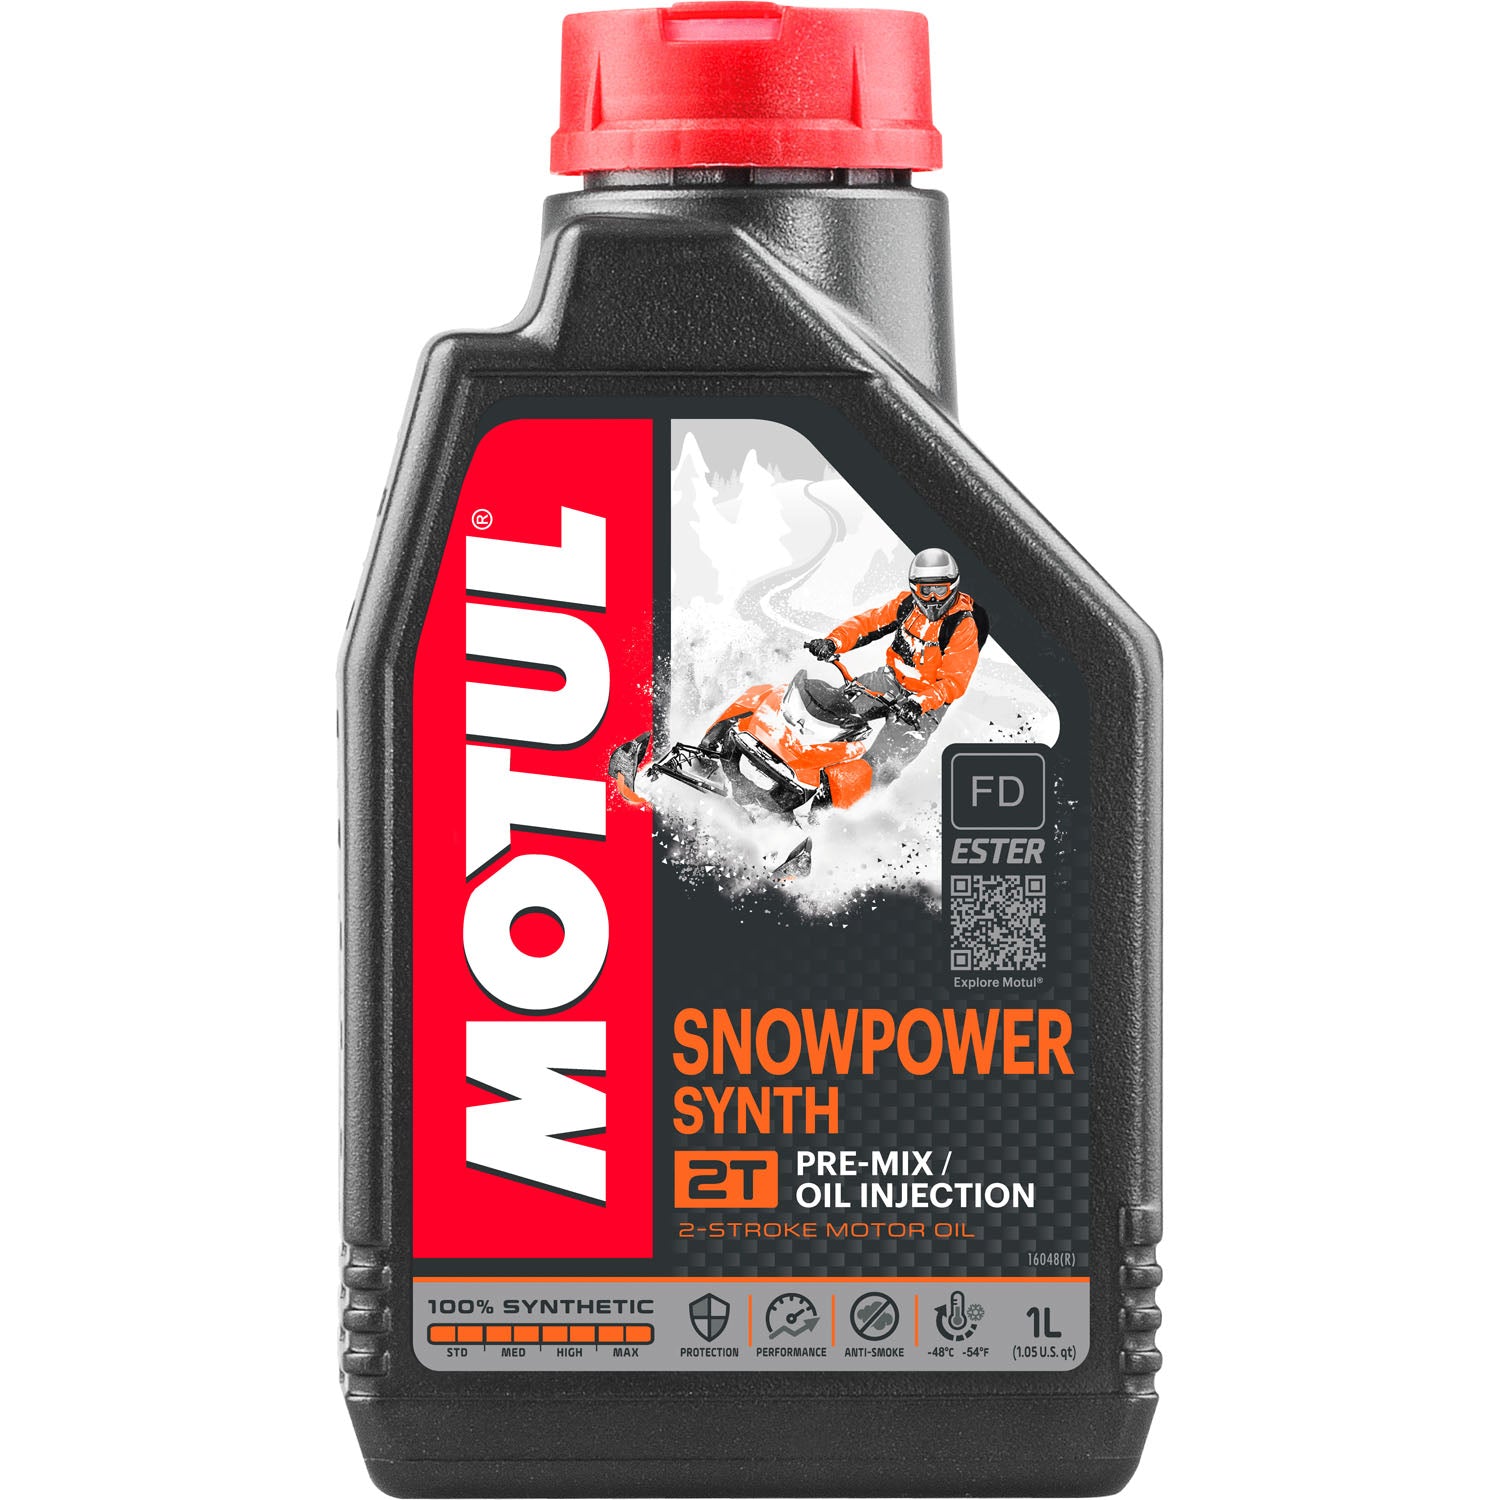 Motul Snowpower Synth 2T Pre-Mix Oil Injection 2-Stroke Motor Oil - 1 Liter